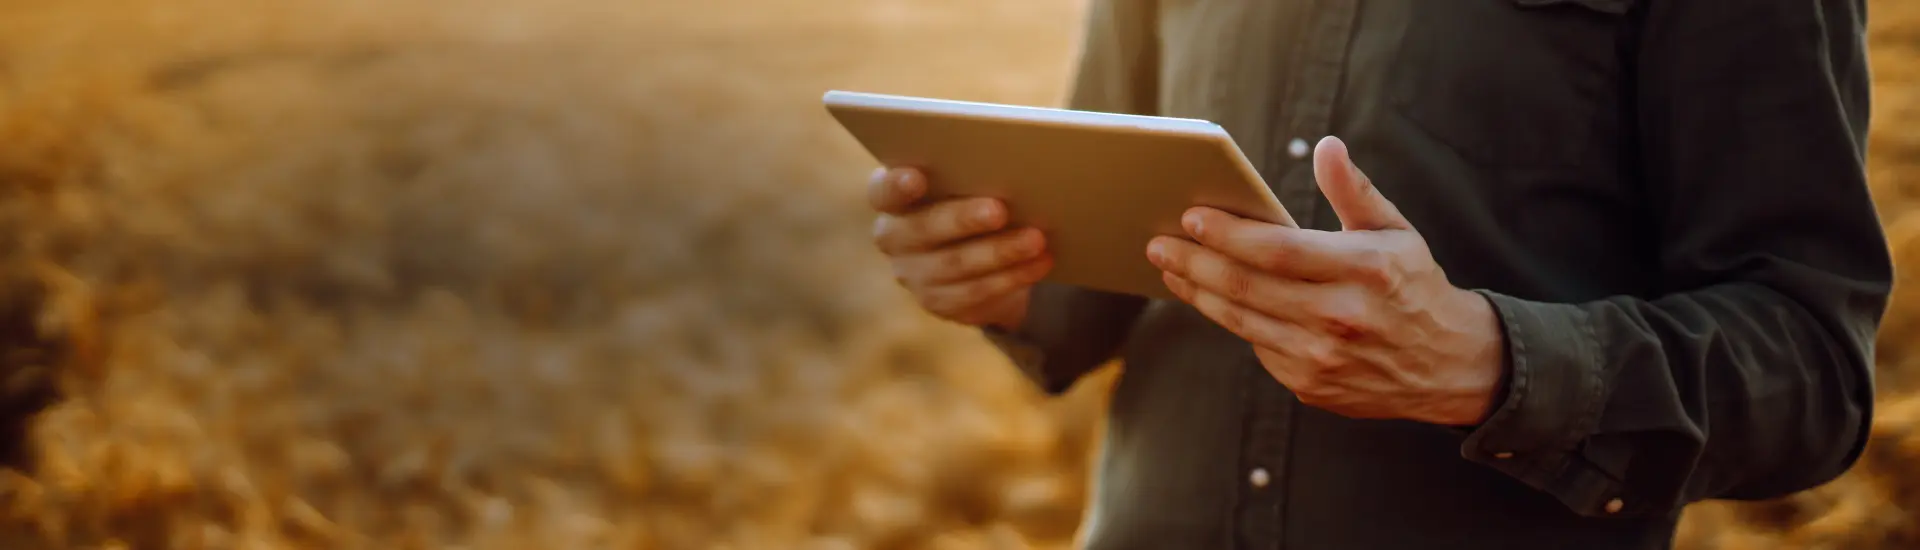 Imagem de pessoa interagindo com tablet, ao fundo está o campo.